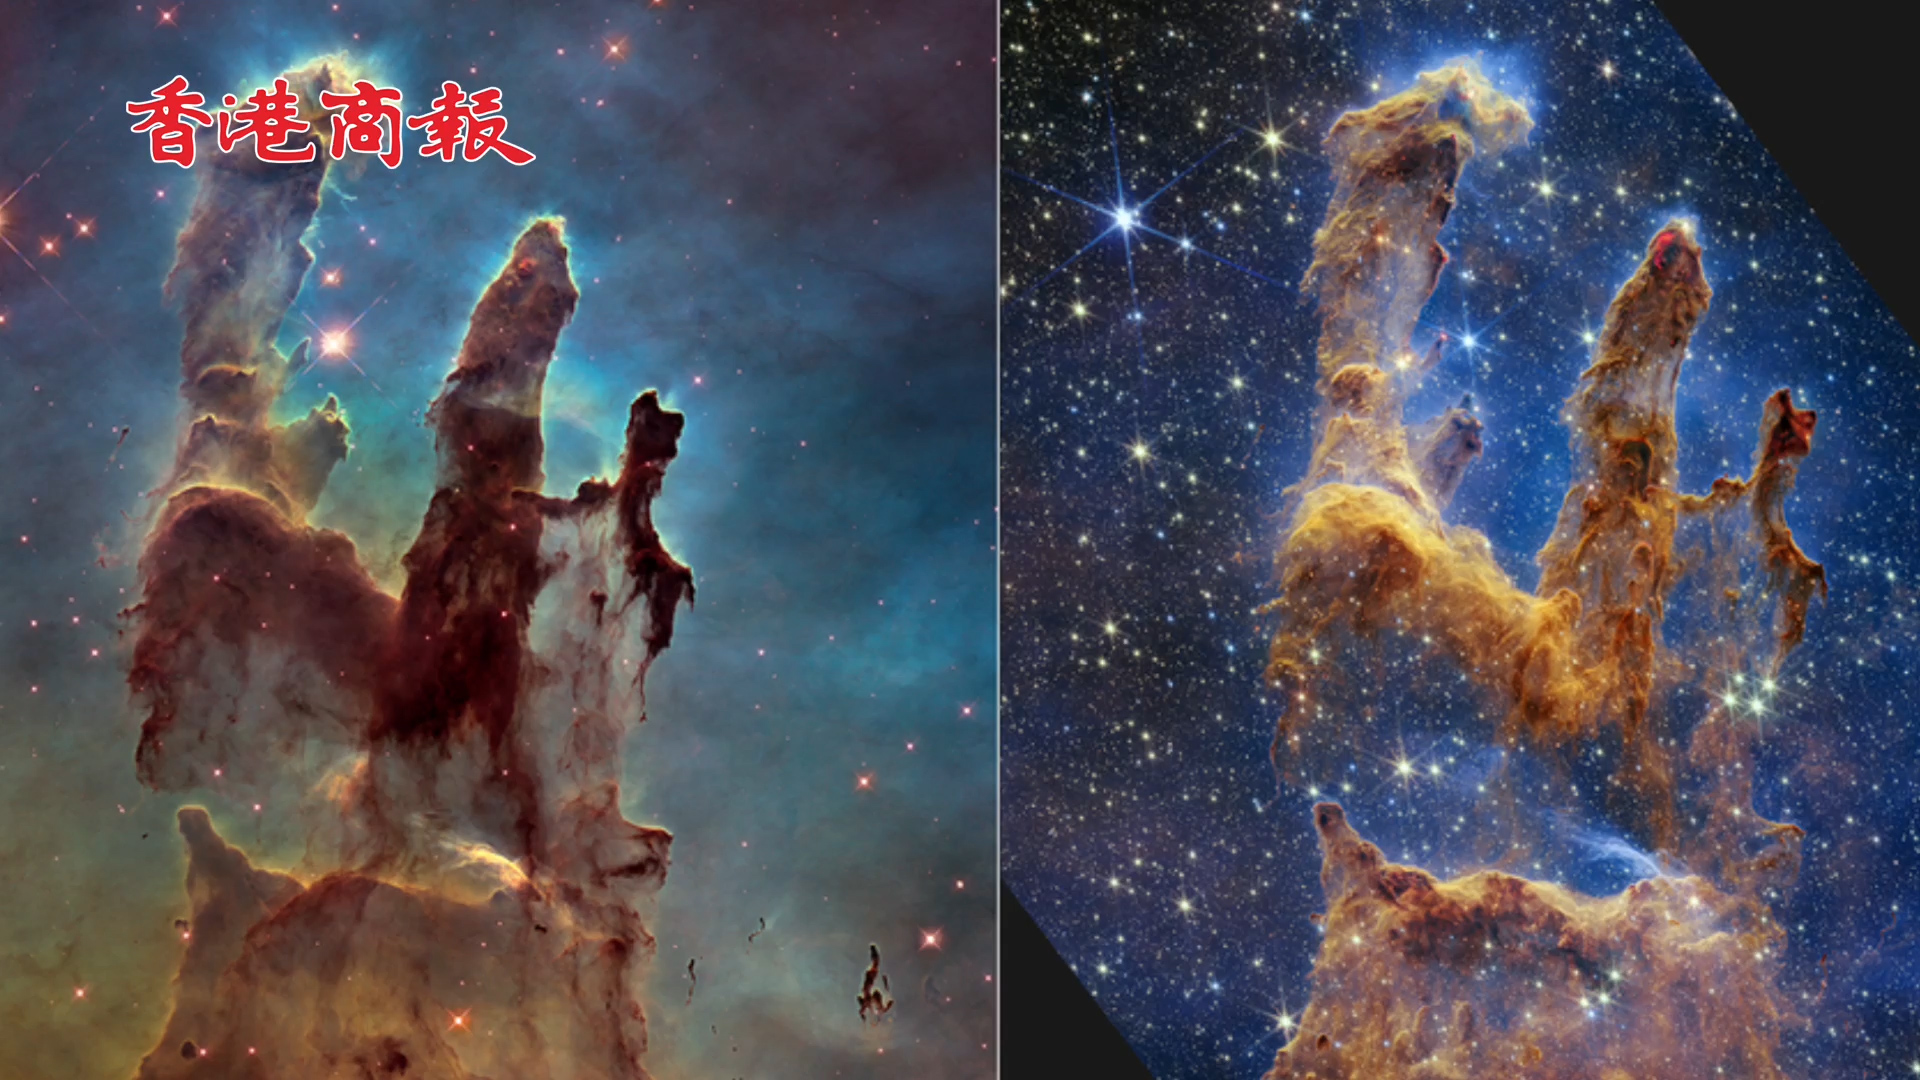 有片 | NASA公布天體景象「創生之柱」新圖像